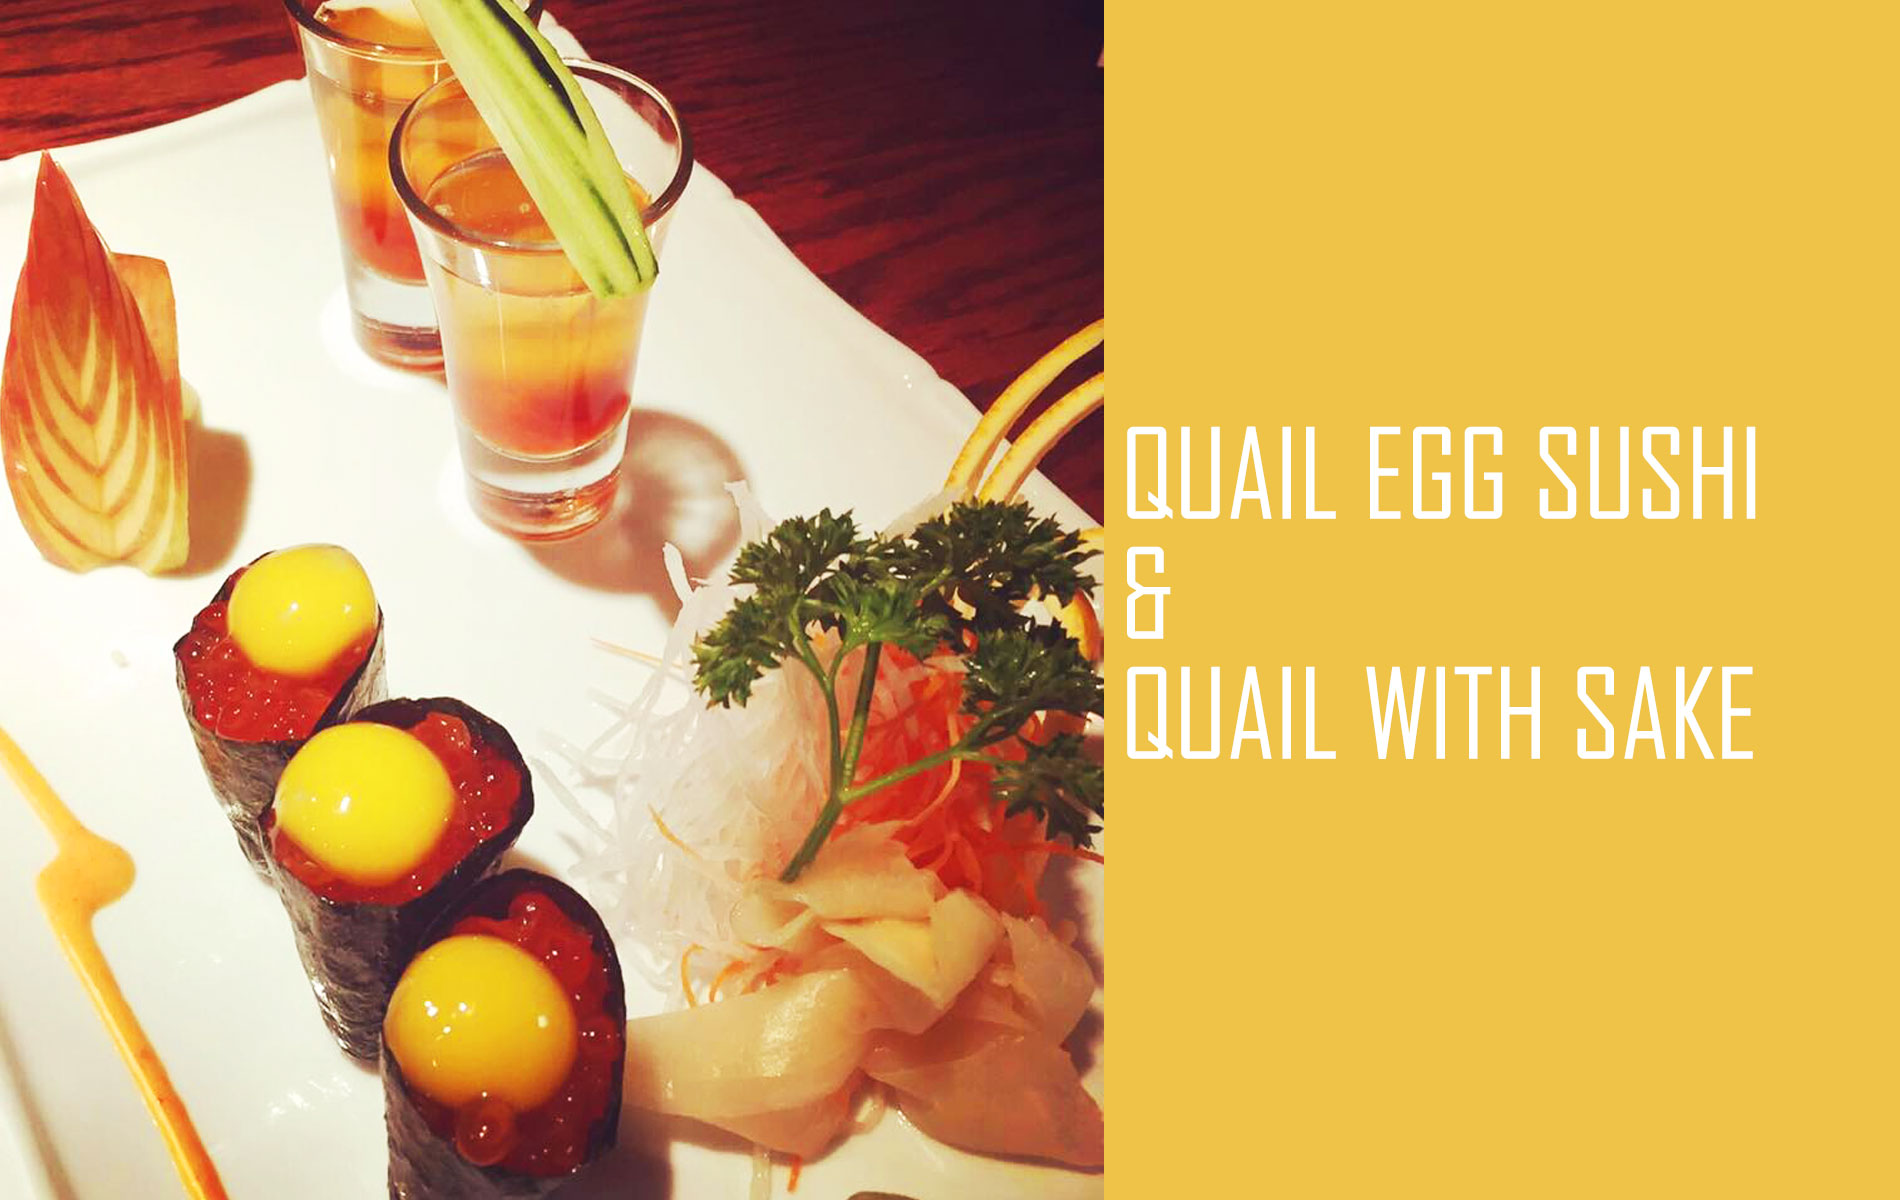 Quail Egg Sushi & Quail with Sake